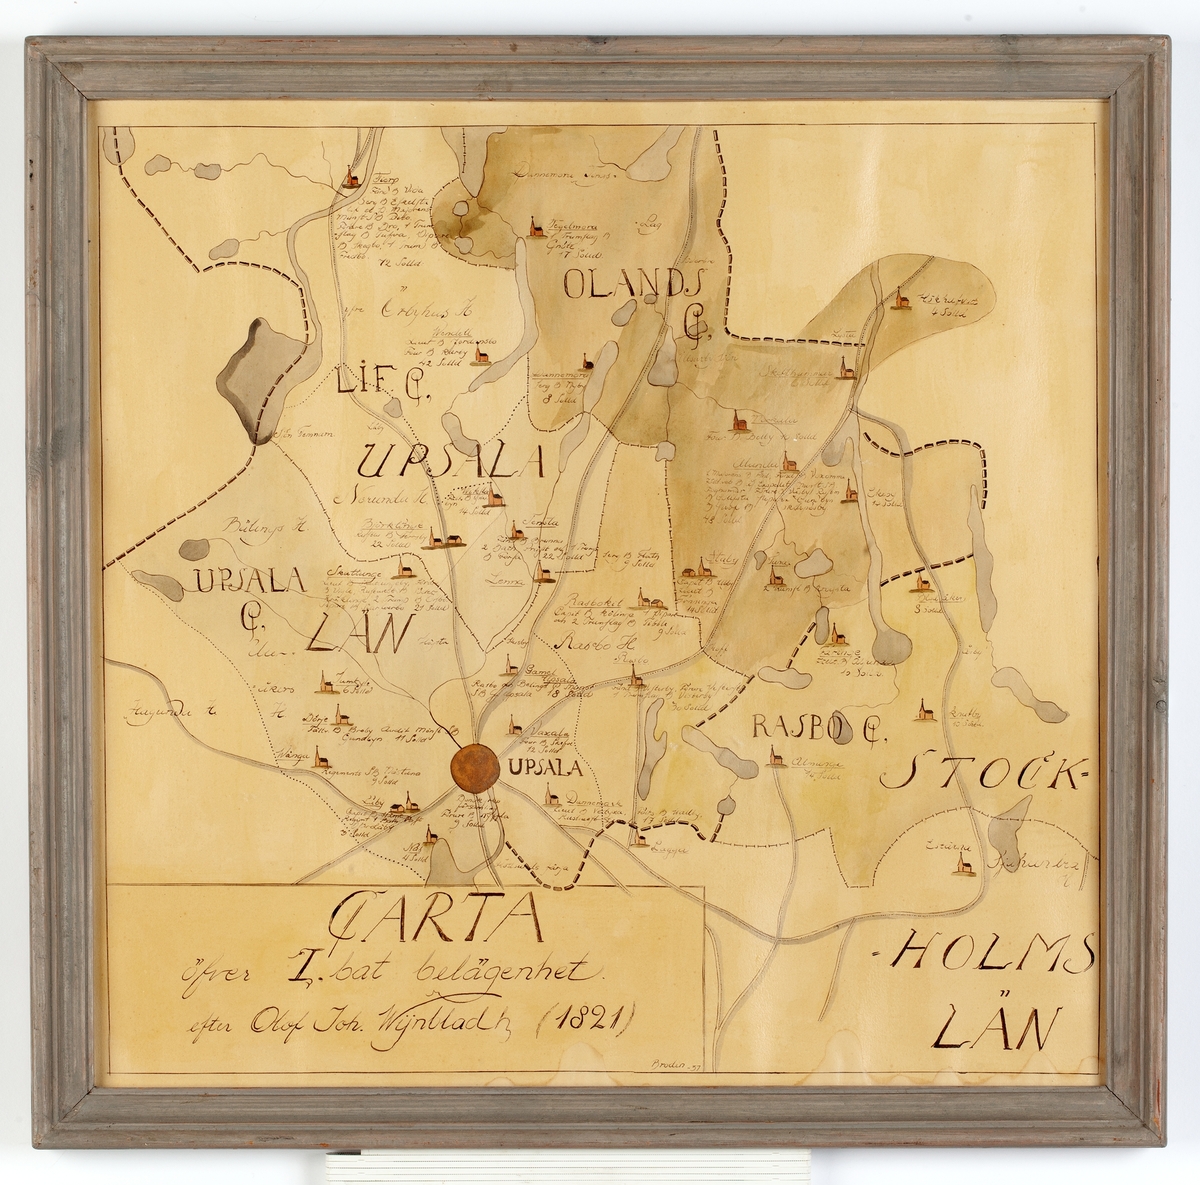 Karta, tuchritad och akvarellerad, med text: CARTA öfver 1 bat belägenhet efter Olof Joh. Wijnbladh (1821) Brodin 37.


